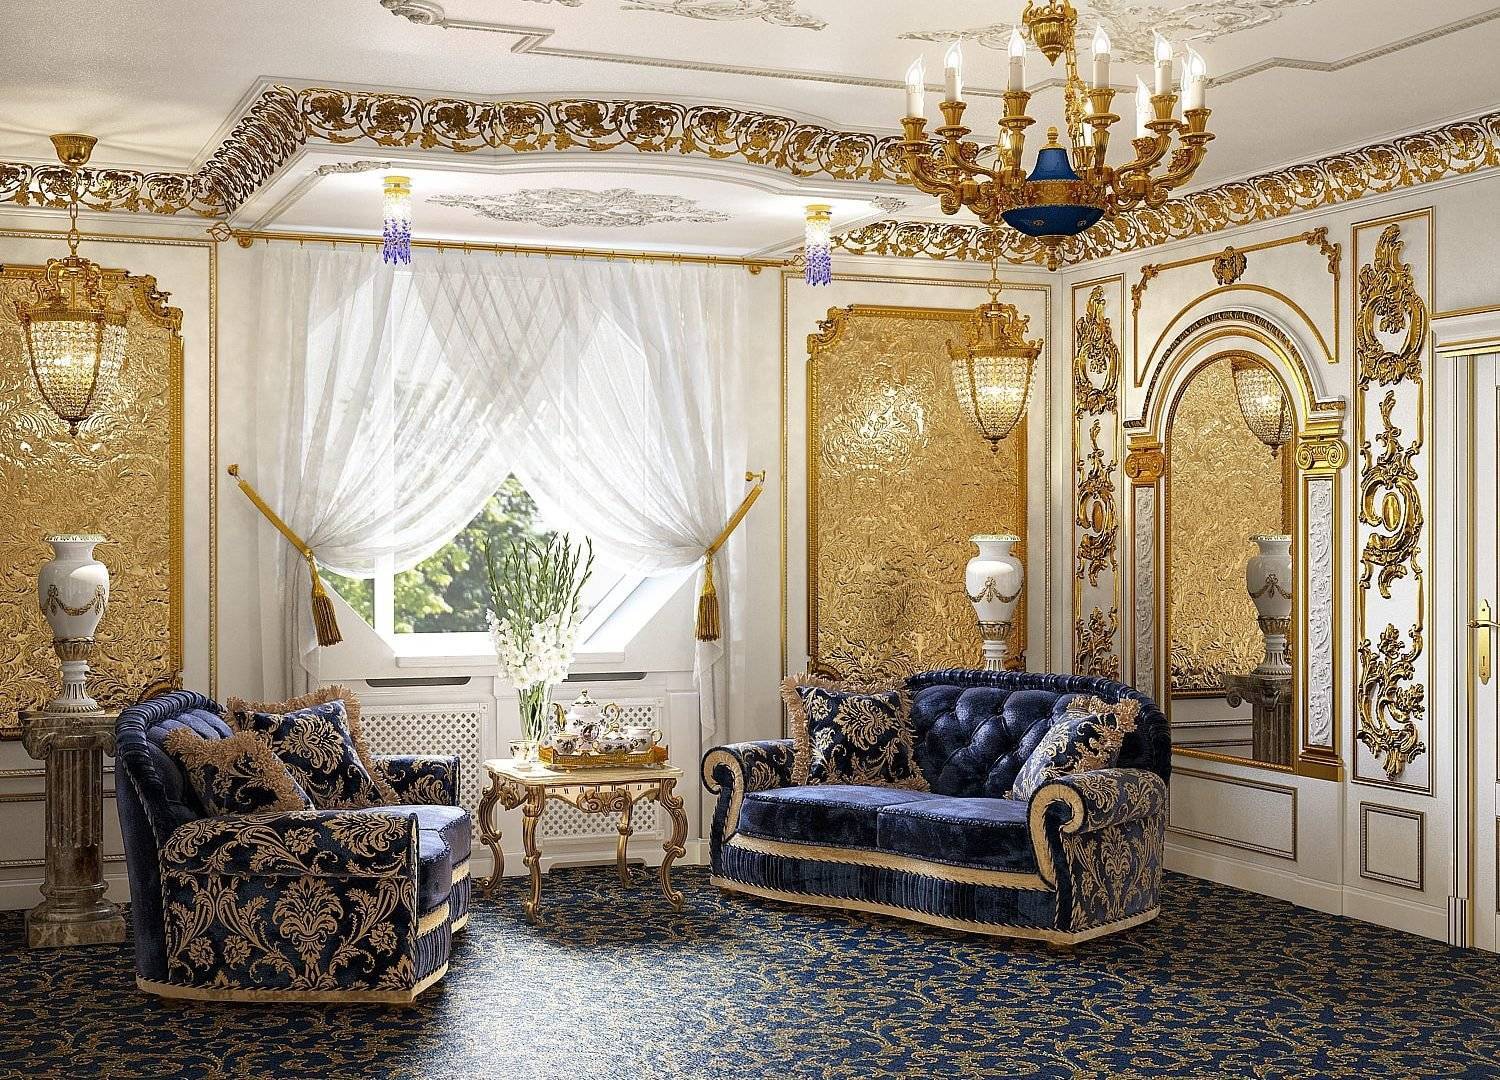 Шик дворцового стиля в интерьере - о комнате